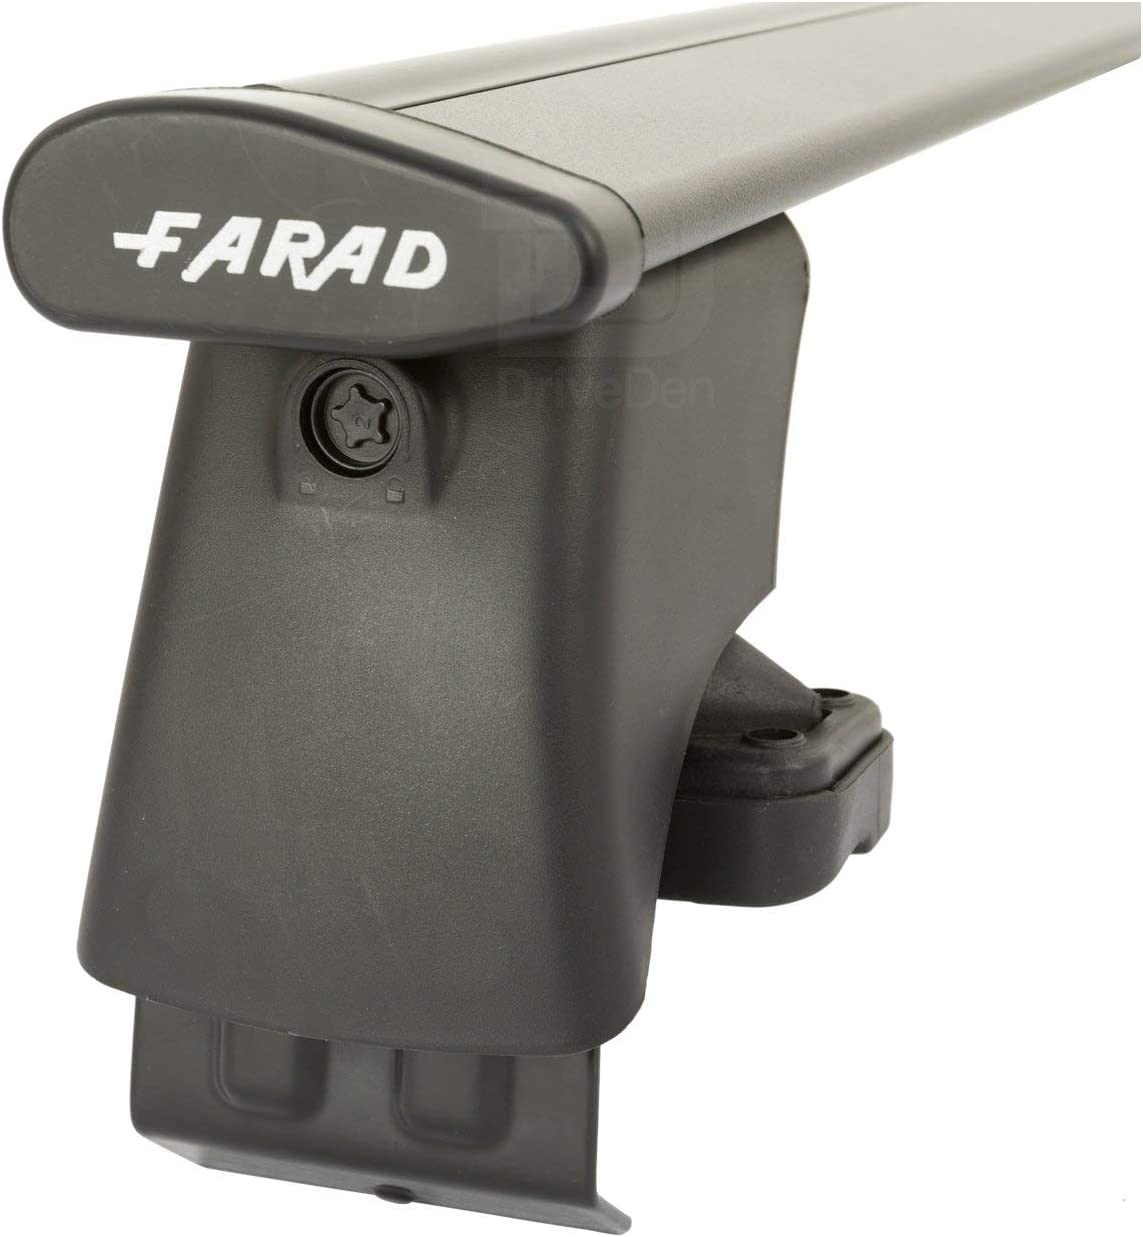 FARAD-Kit H2 per barre portatutto - Volkswagen Tiguan 2007-2016 (senza corrimano)